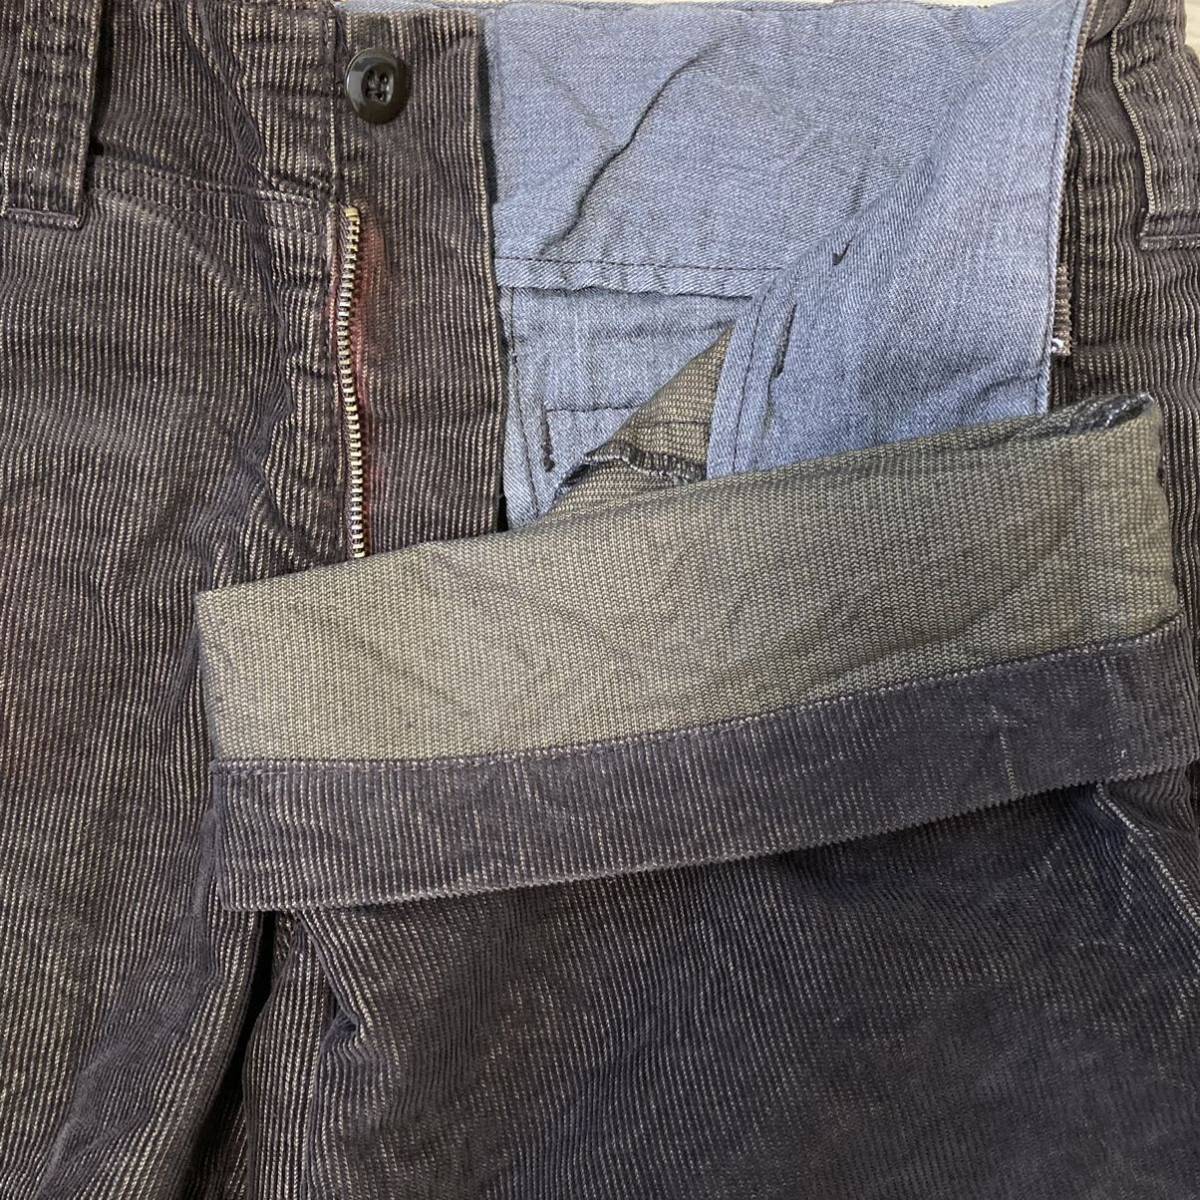 【BARTACK WORK CLOTHING DEPT】バータック コーデュロイ カーゴパンツ ミリタリー アメリカ ボトムス ブラウン メンズ M/1402UU_画像5